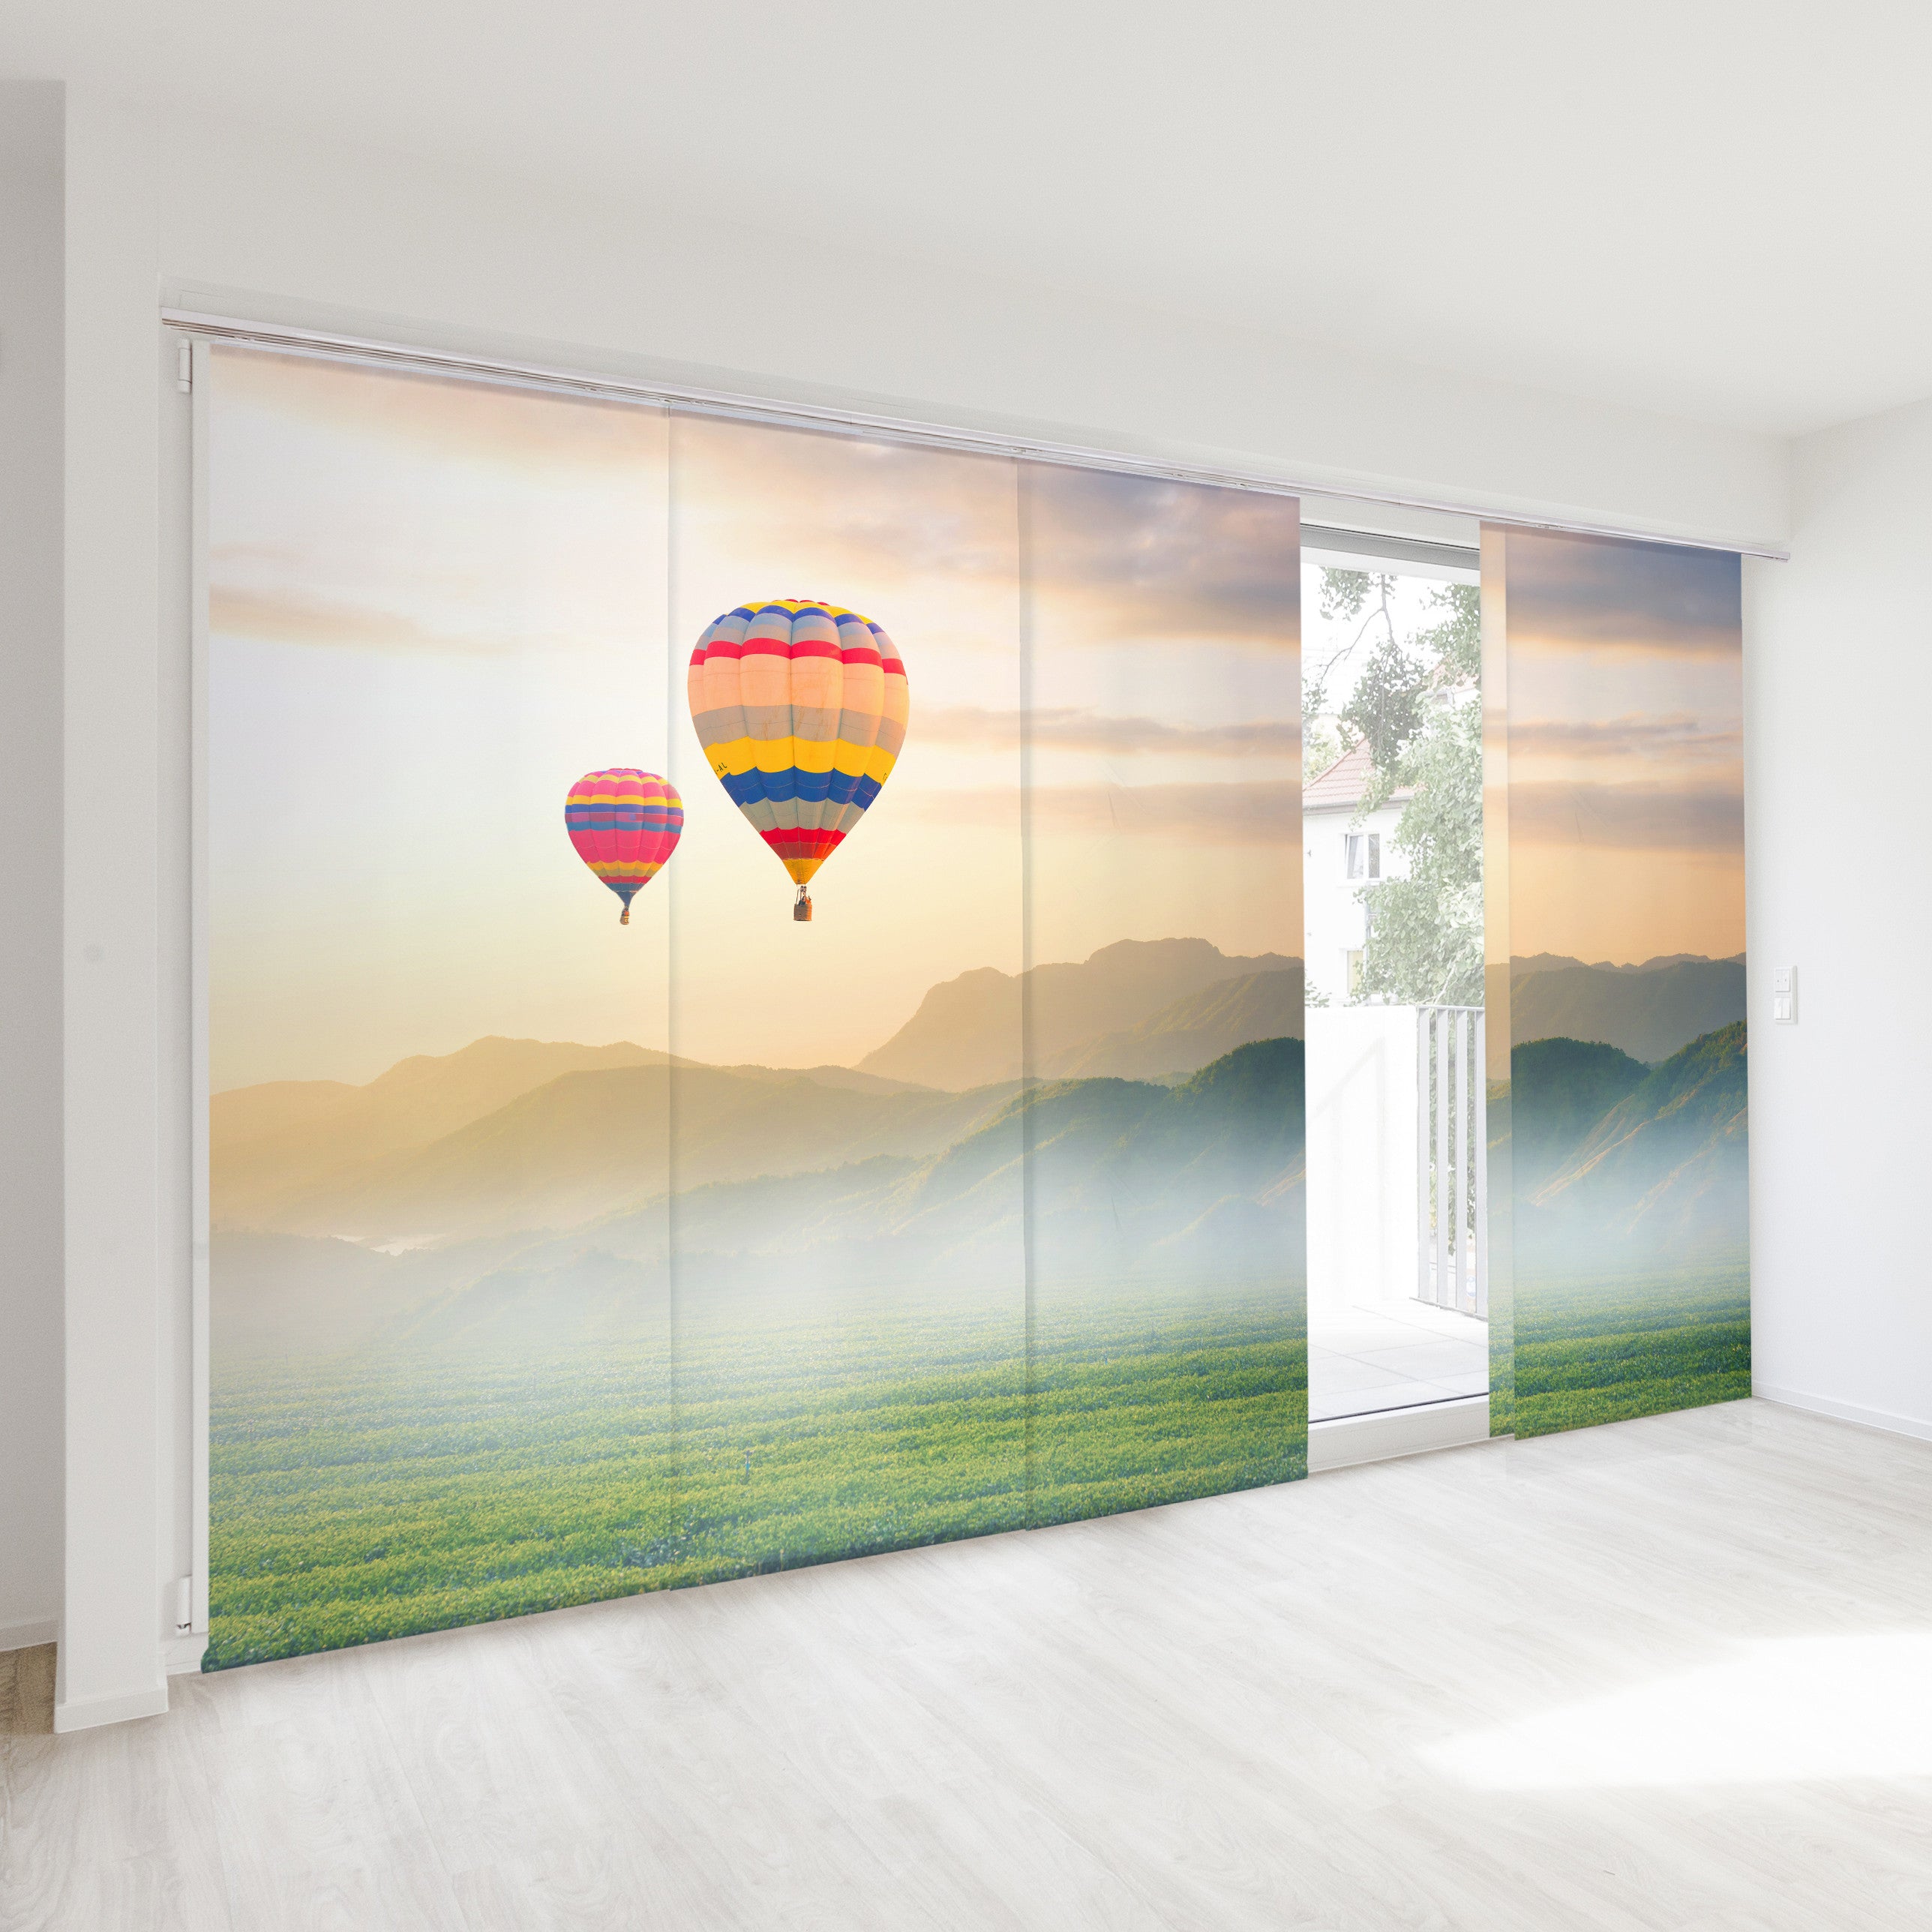 4-teilige Schiebegardine bedeckt eine große Fensterfront. Auf der Schiebegardine ist eine Landschaft mit zwei Heissluftballons gedruckt